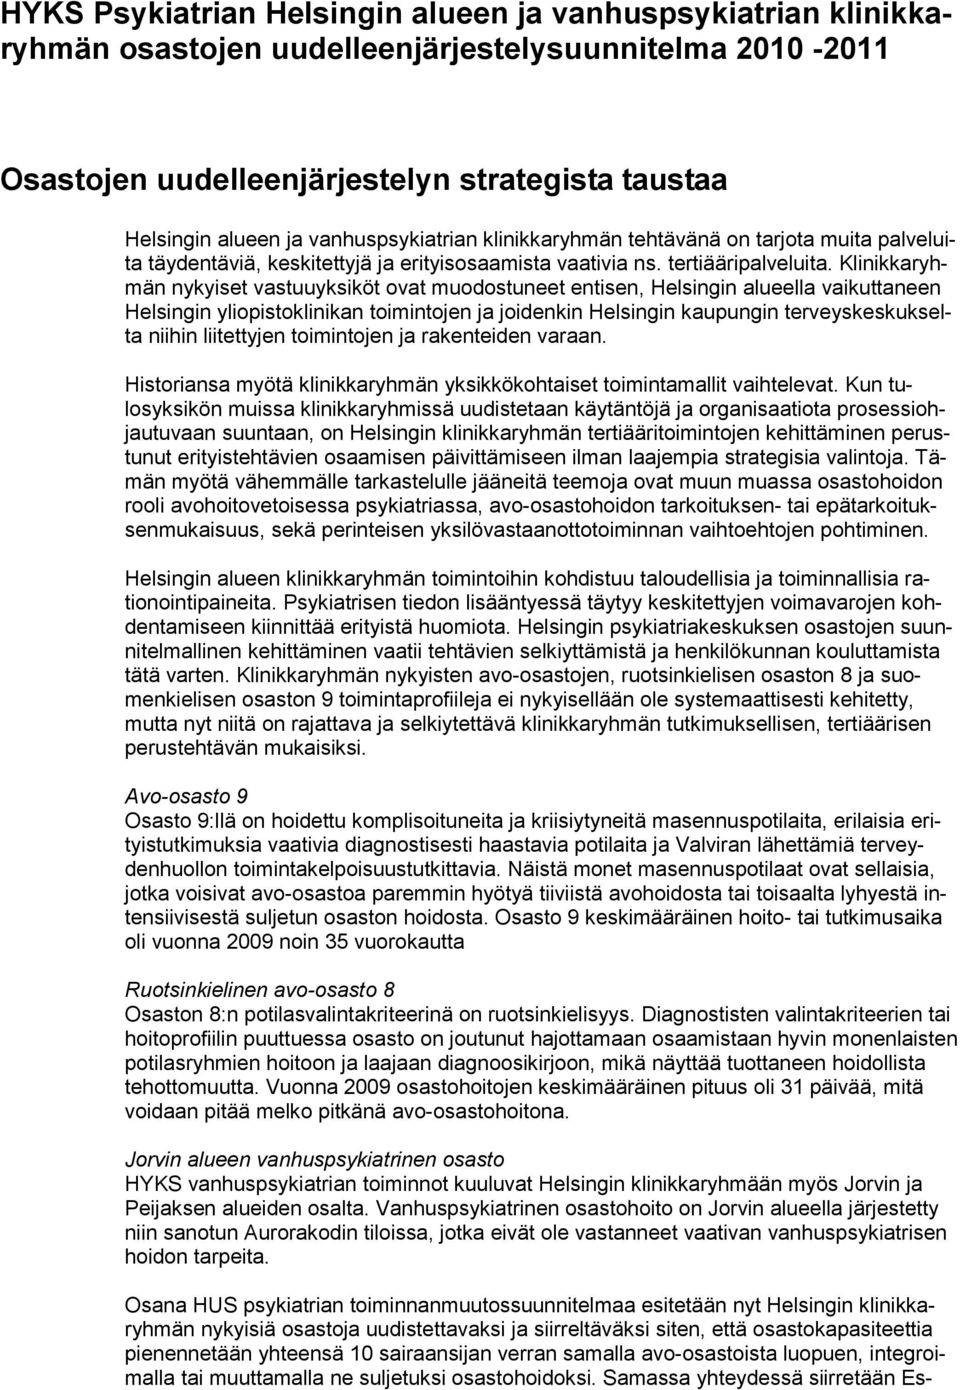 Klinikkaryhmän nykyiset vastuuyksiköt ovat muodostuneet entisen, Helsingin alueella vaikuttaneen Helsingin yliopistoklinikan toimintojen ja joidenkin Helsingin kaupungin terveyskeskukselta niihin